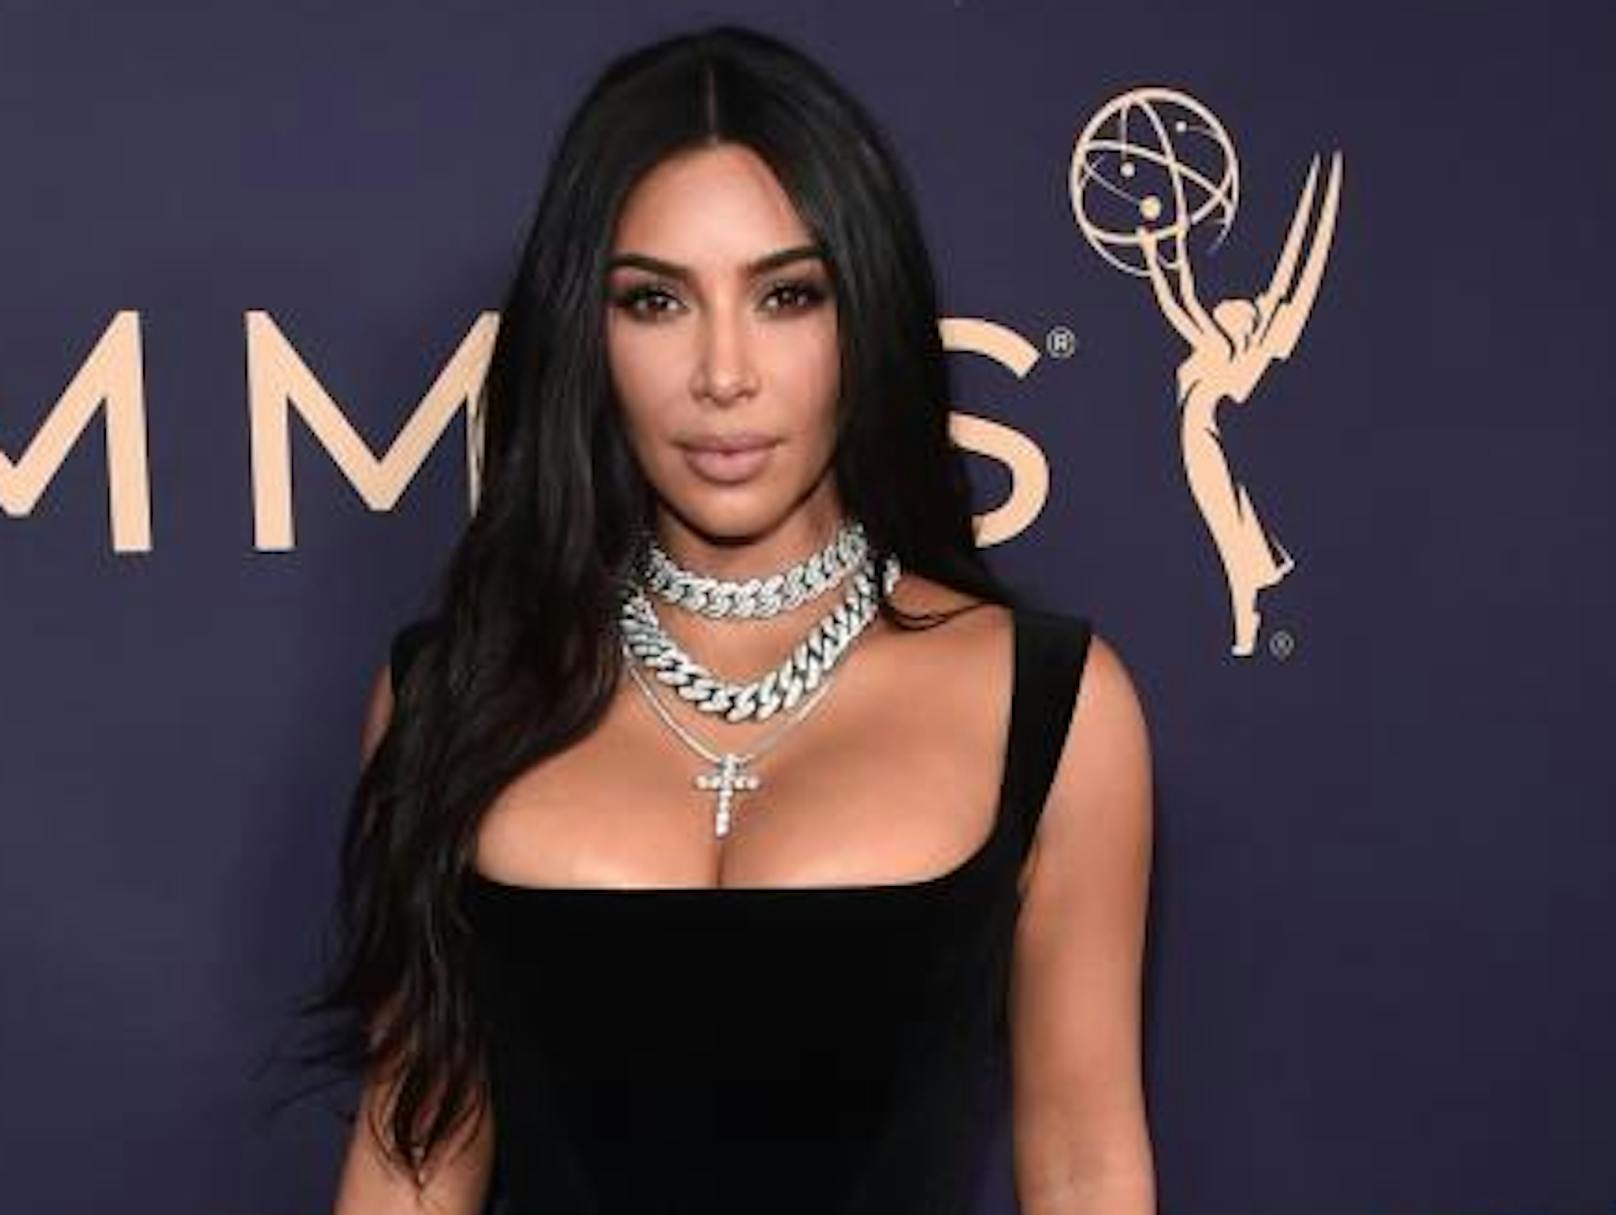 Zum 40er feiert <strong>Kim Kardashian</strong> stolz ihre Kurven, doch das Netz kritisiert ihre Beauty-OPs: "Mit Geld ist wohl alles möglich."